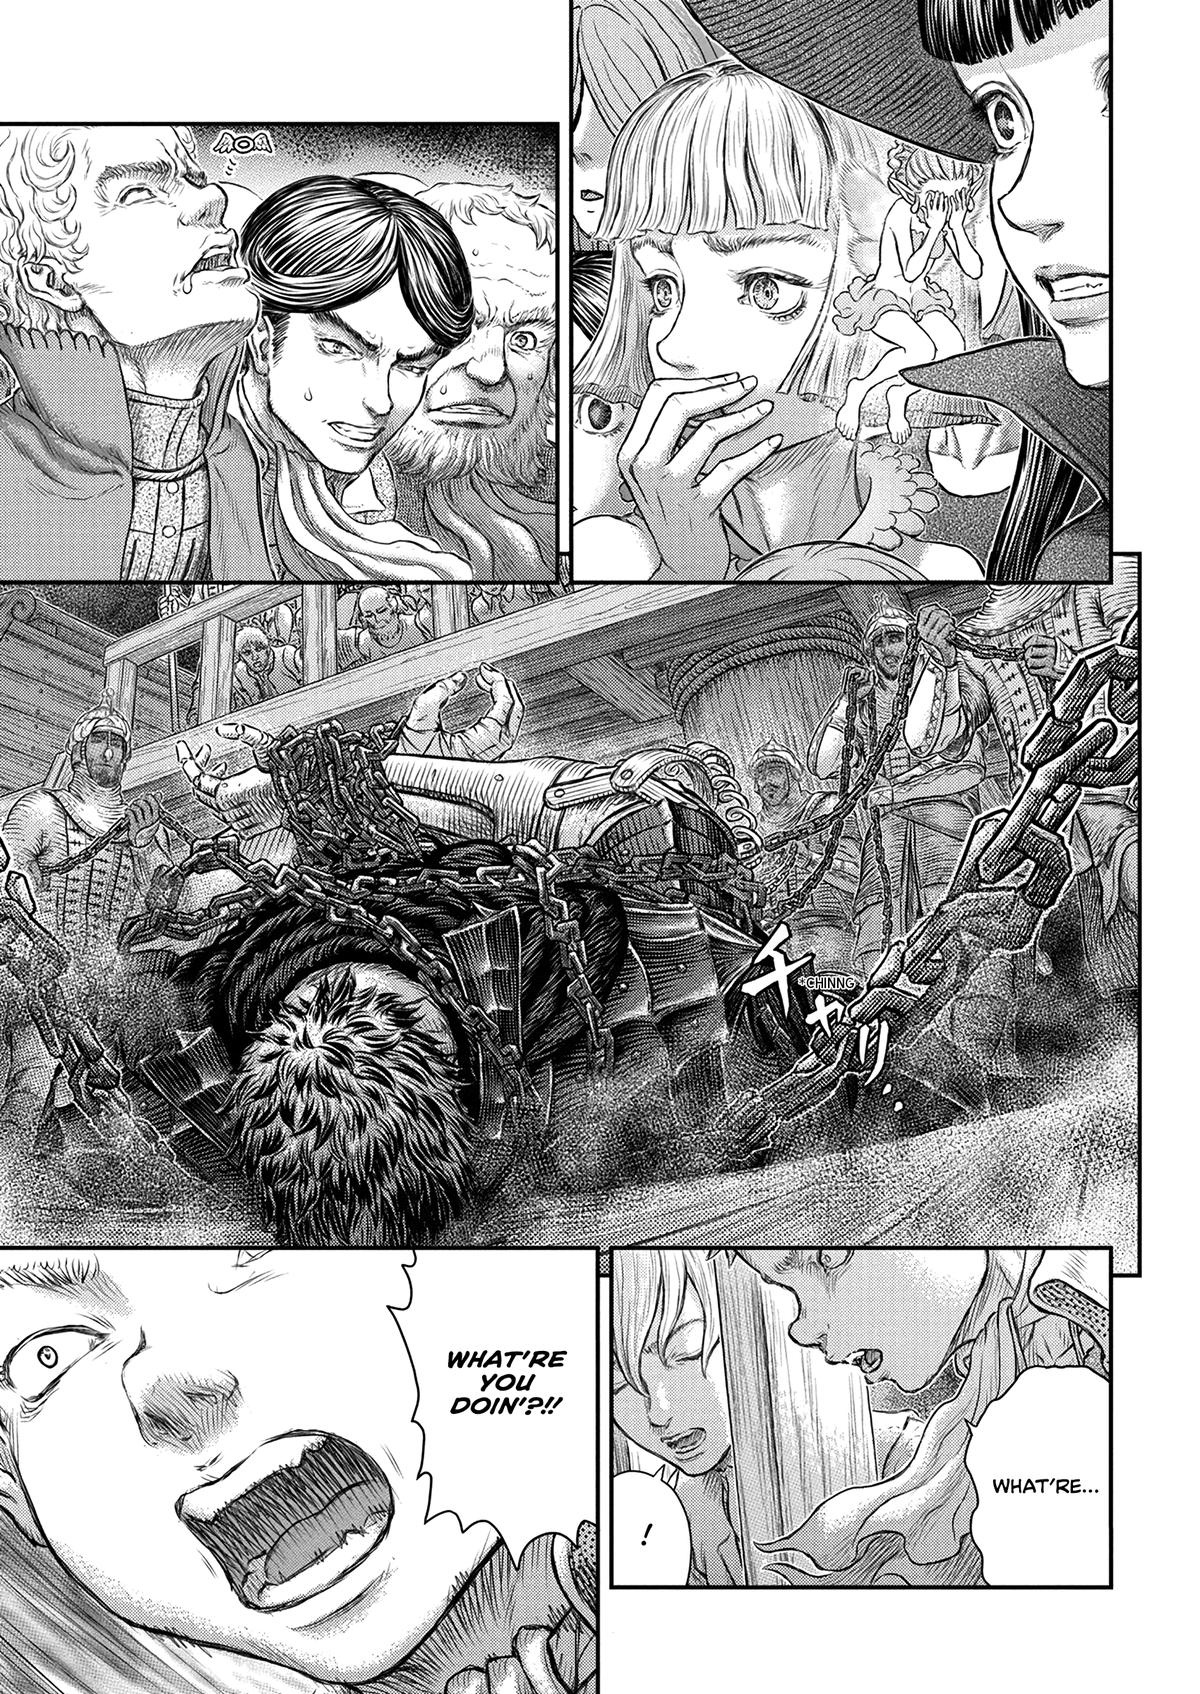 Berserk Manga Chapter 375 image 11